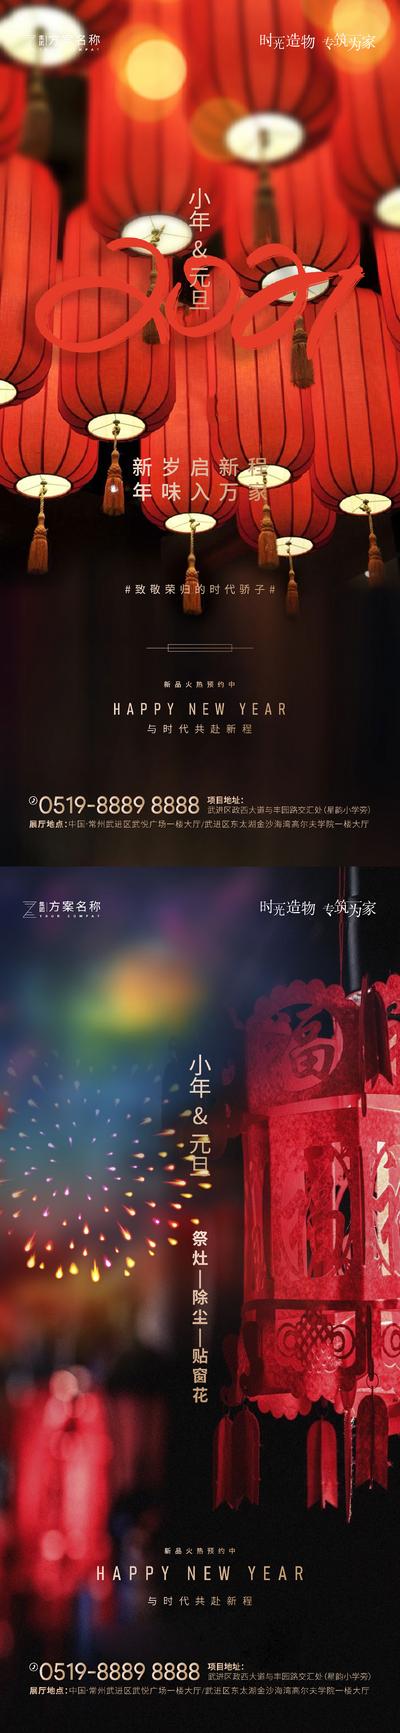 南门网 海报 公历节日 中国传统节日  元旦 小年 灯笼 烟花 系列